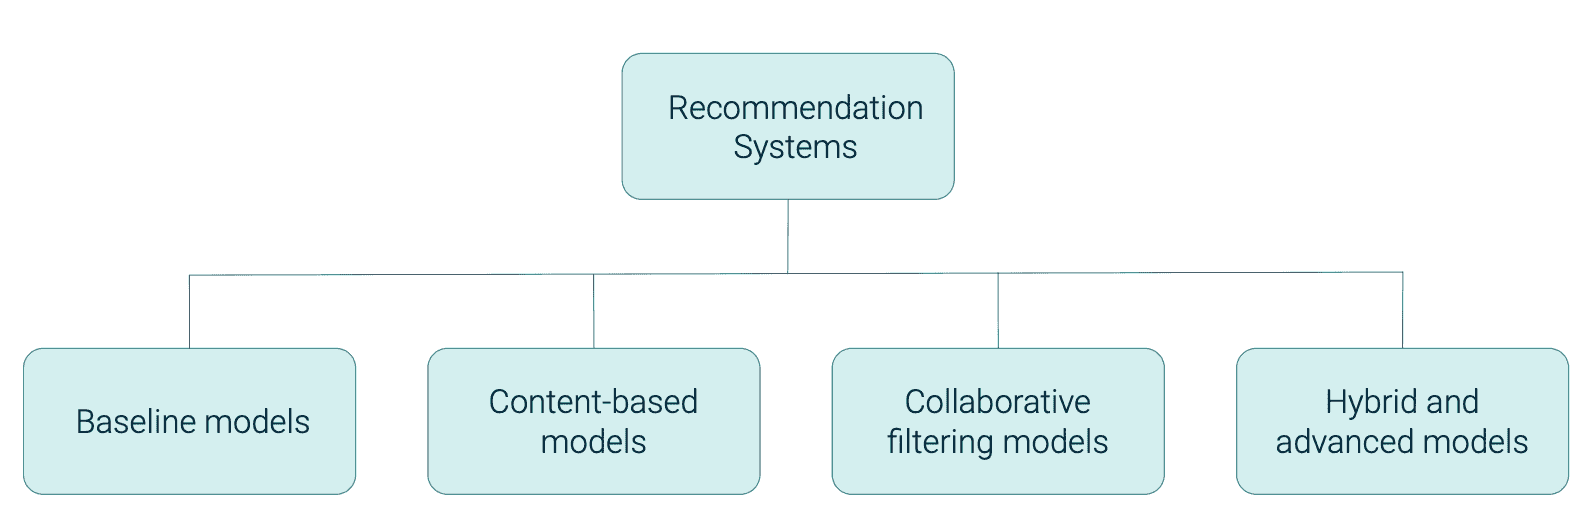 schema-recommendation-systems-getindata